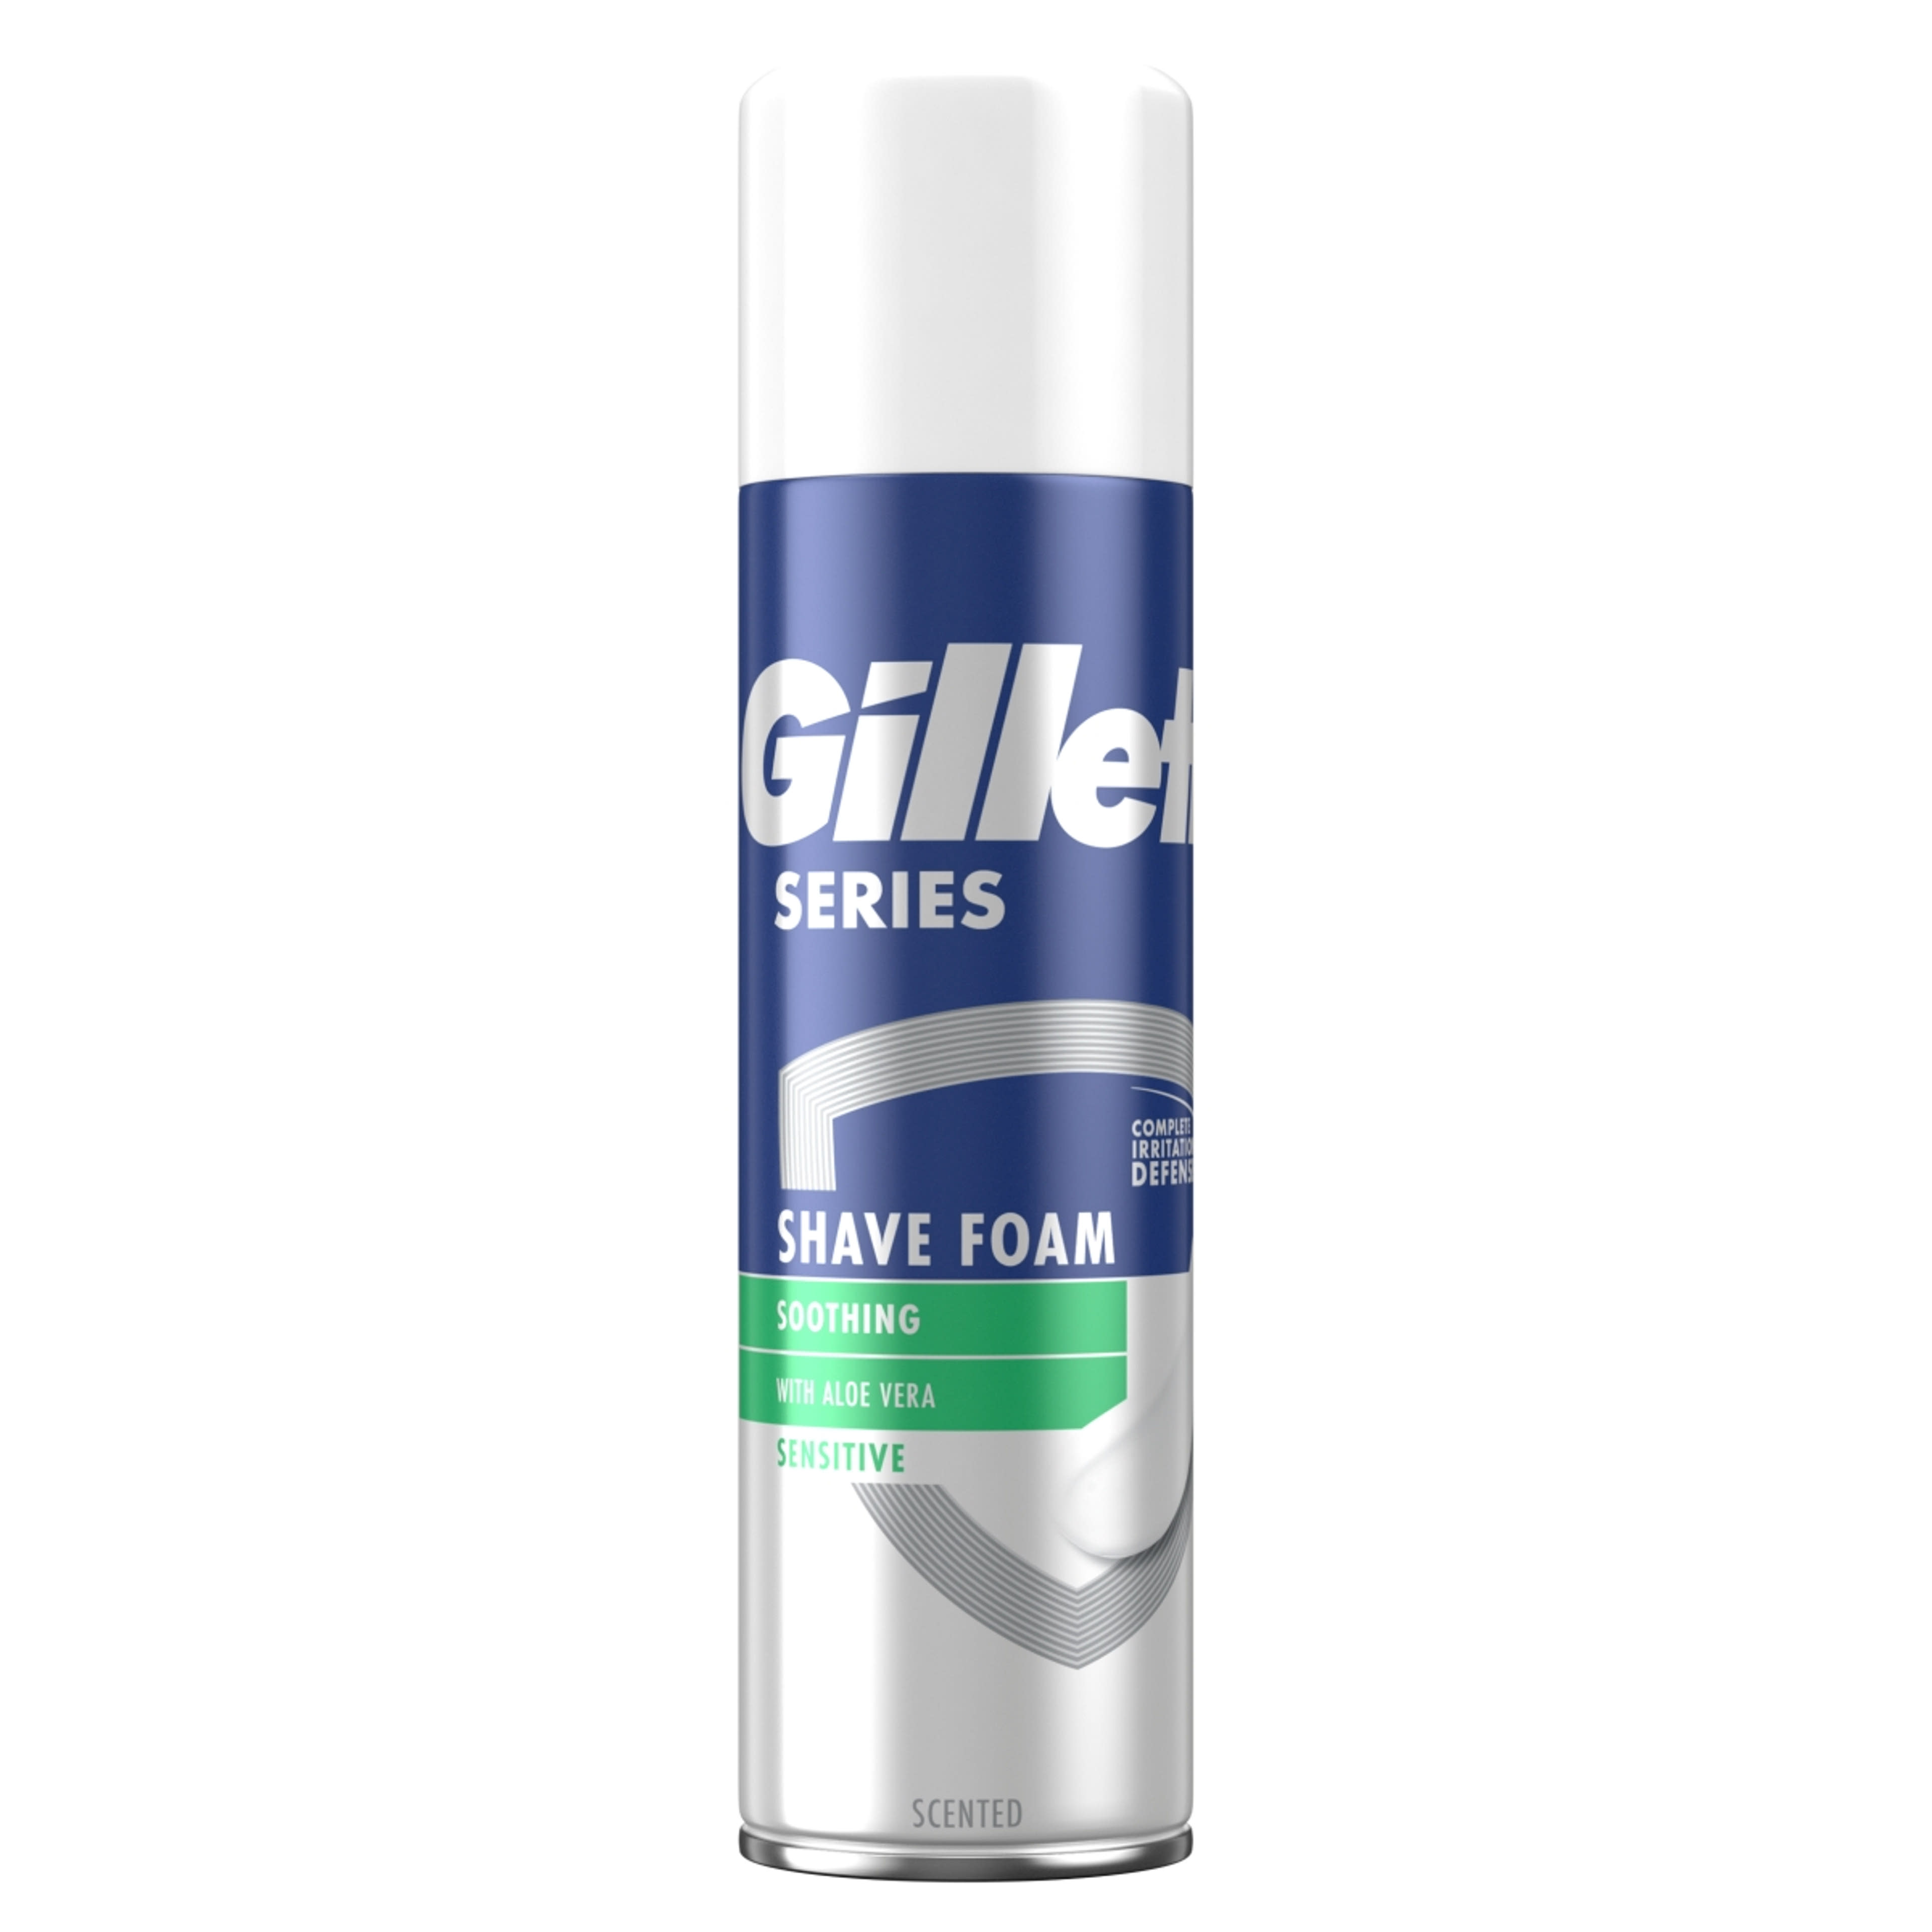 Gillette Series borotvahab érzékeny bõrre - 250 ml